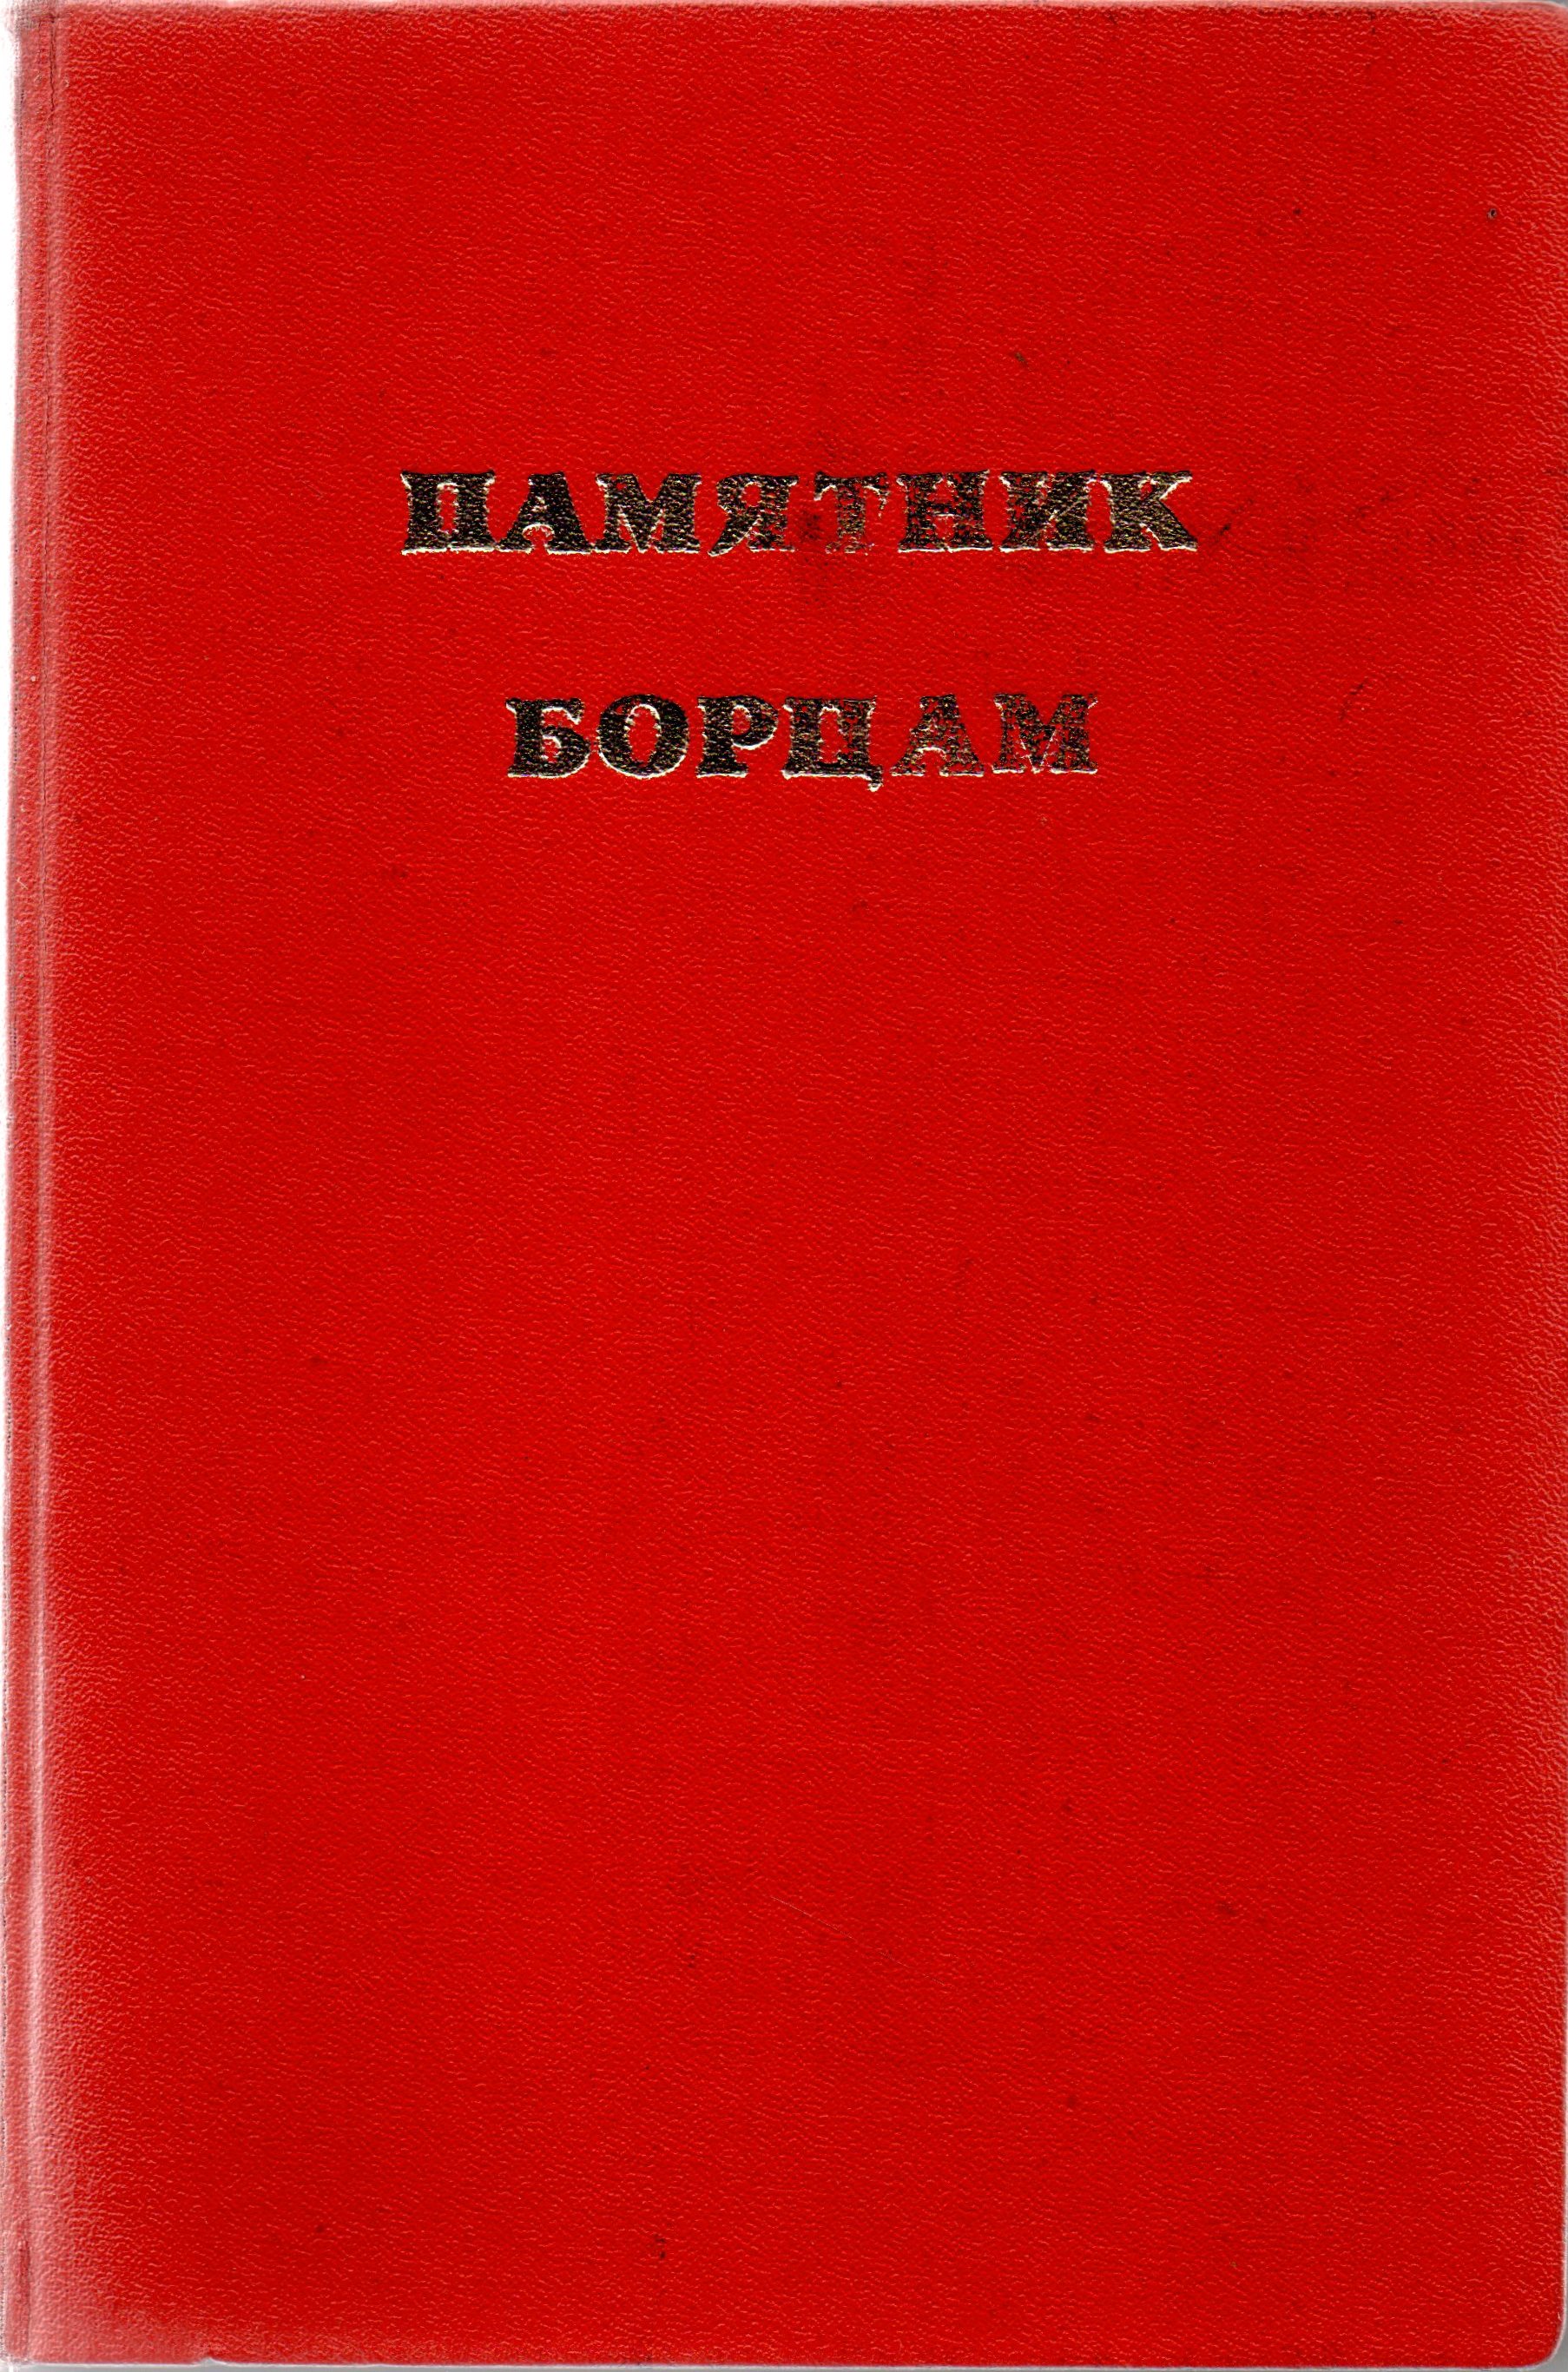 Книга "Памятник борцам"